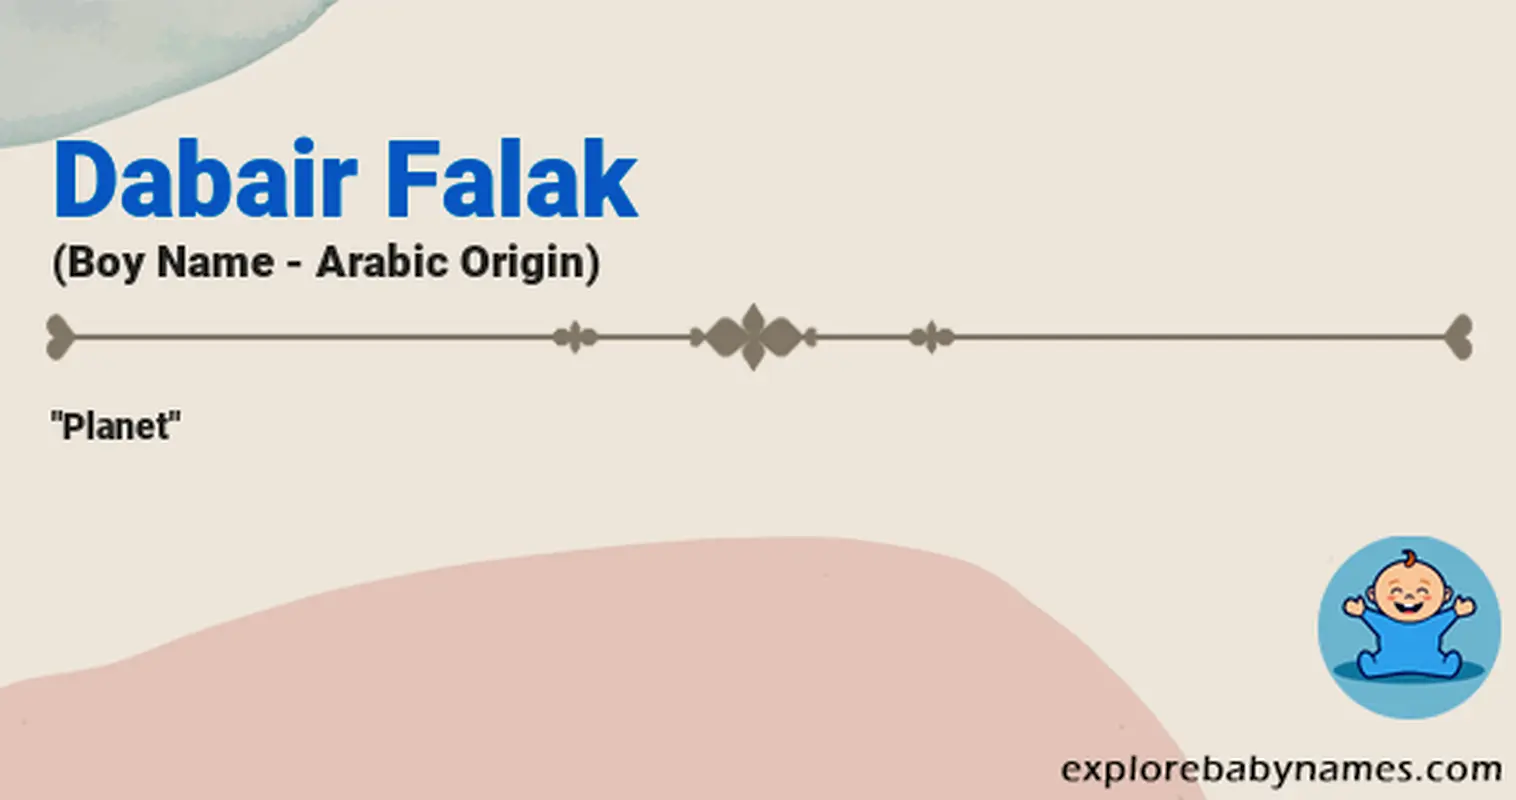 Meaning of Dabair Falak